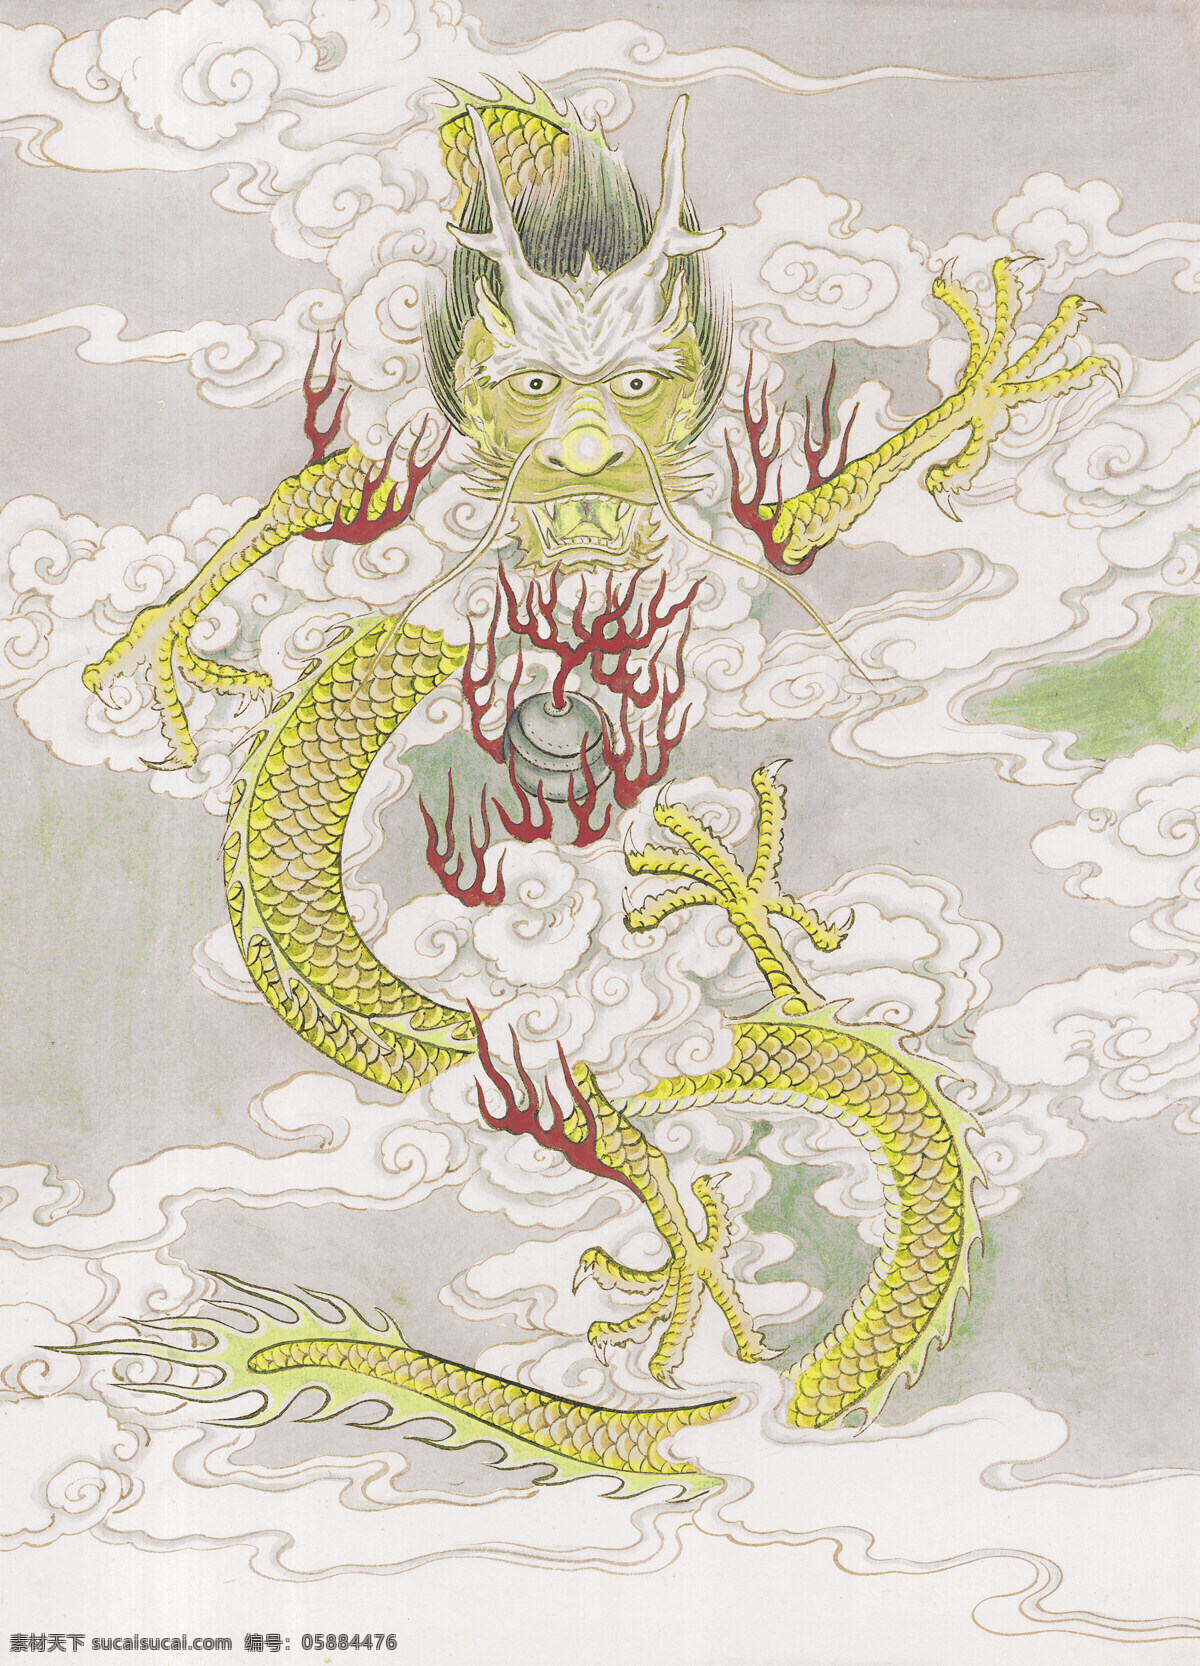 龙 生肖 工笔动物画 国画 设计素材 动物画篇 中国画篇 书画美术 白色